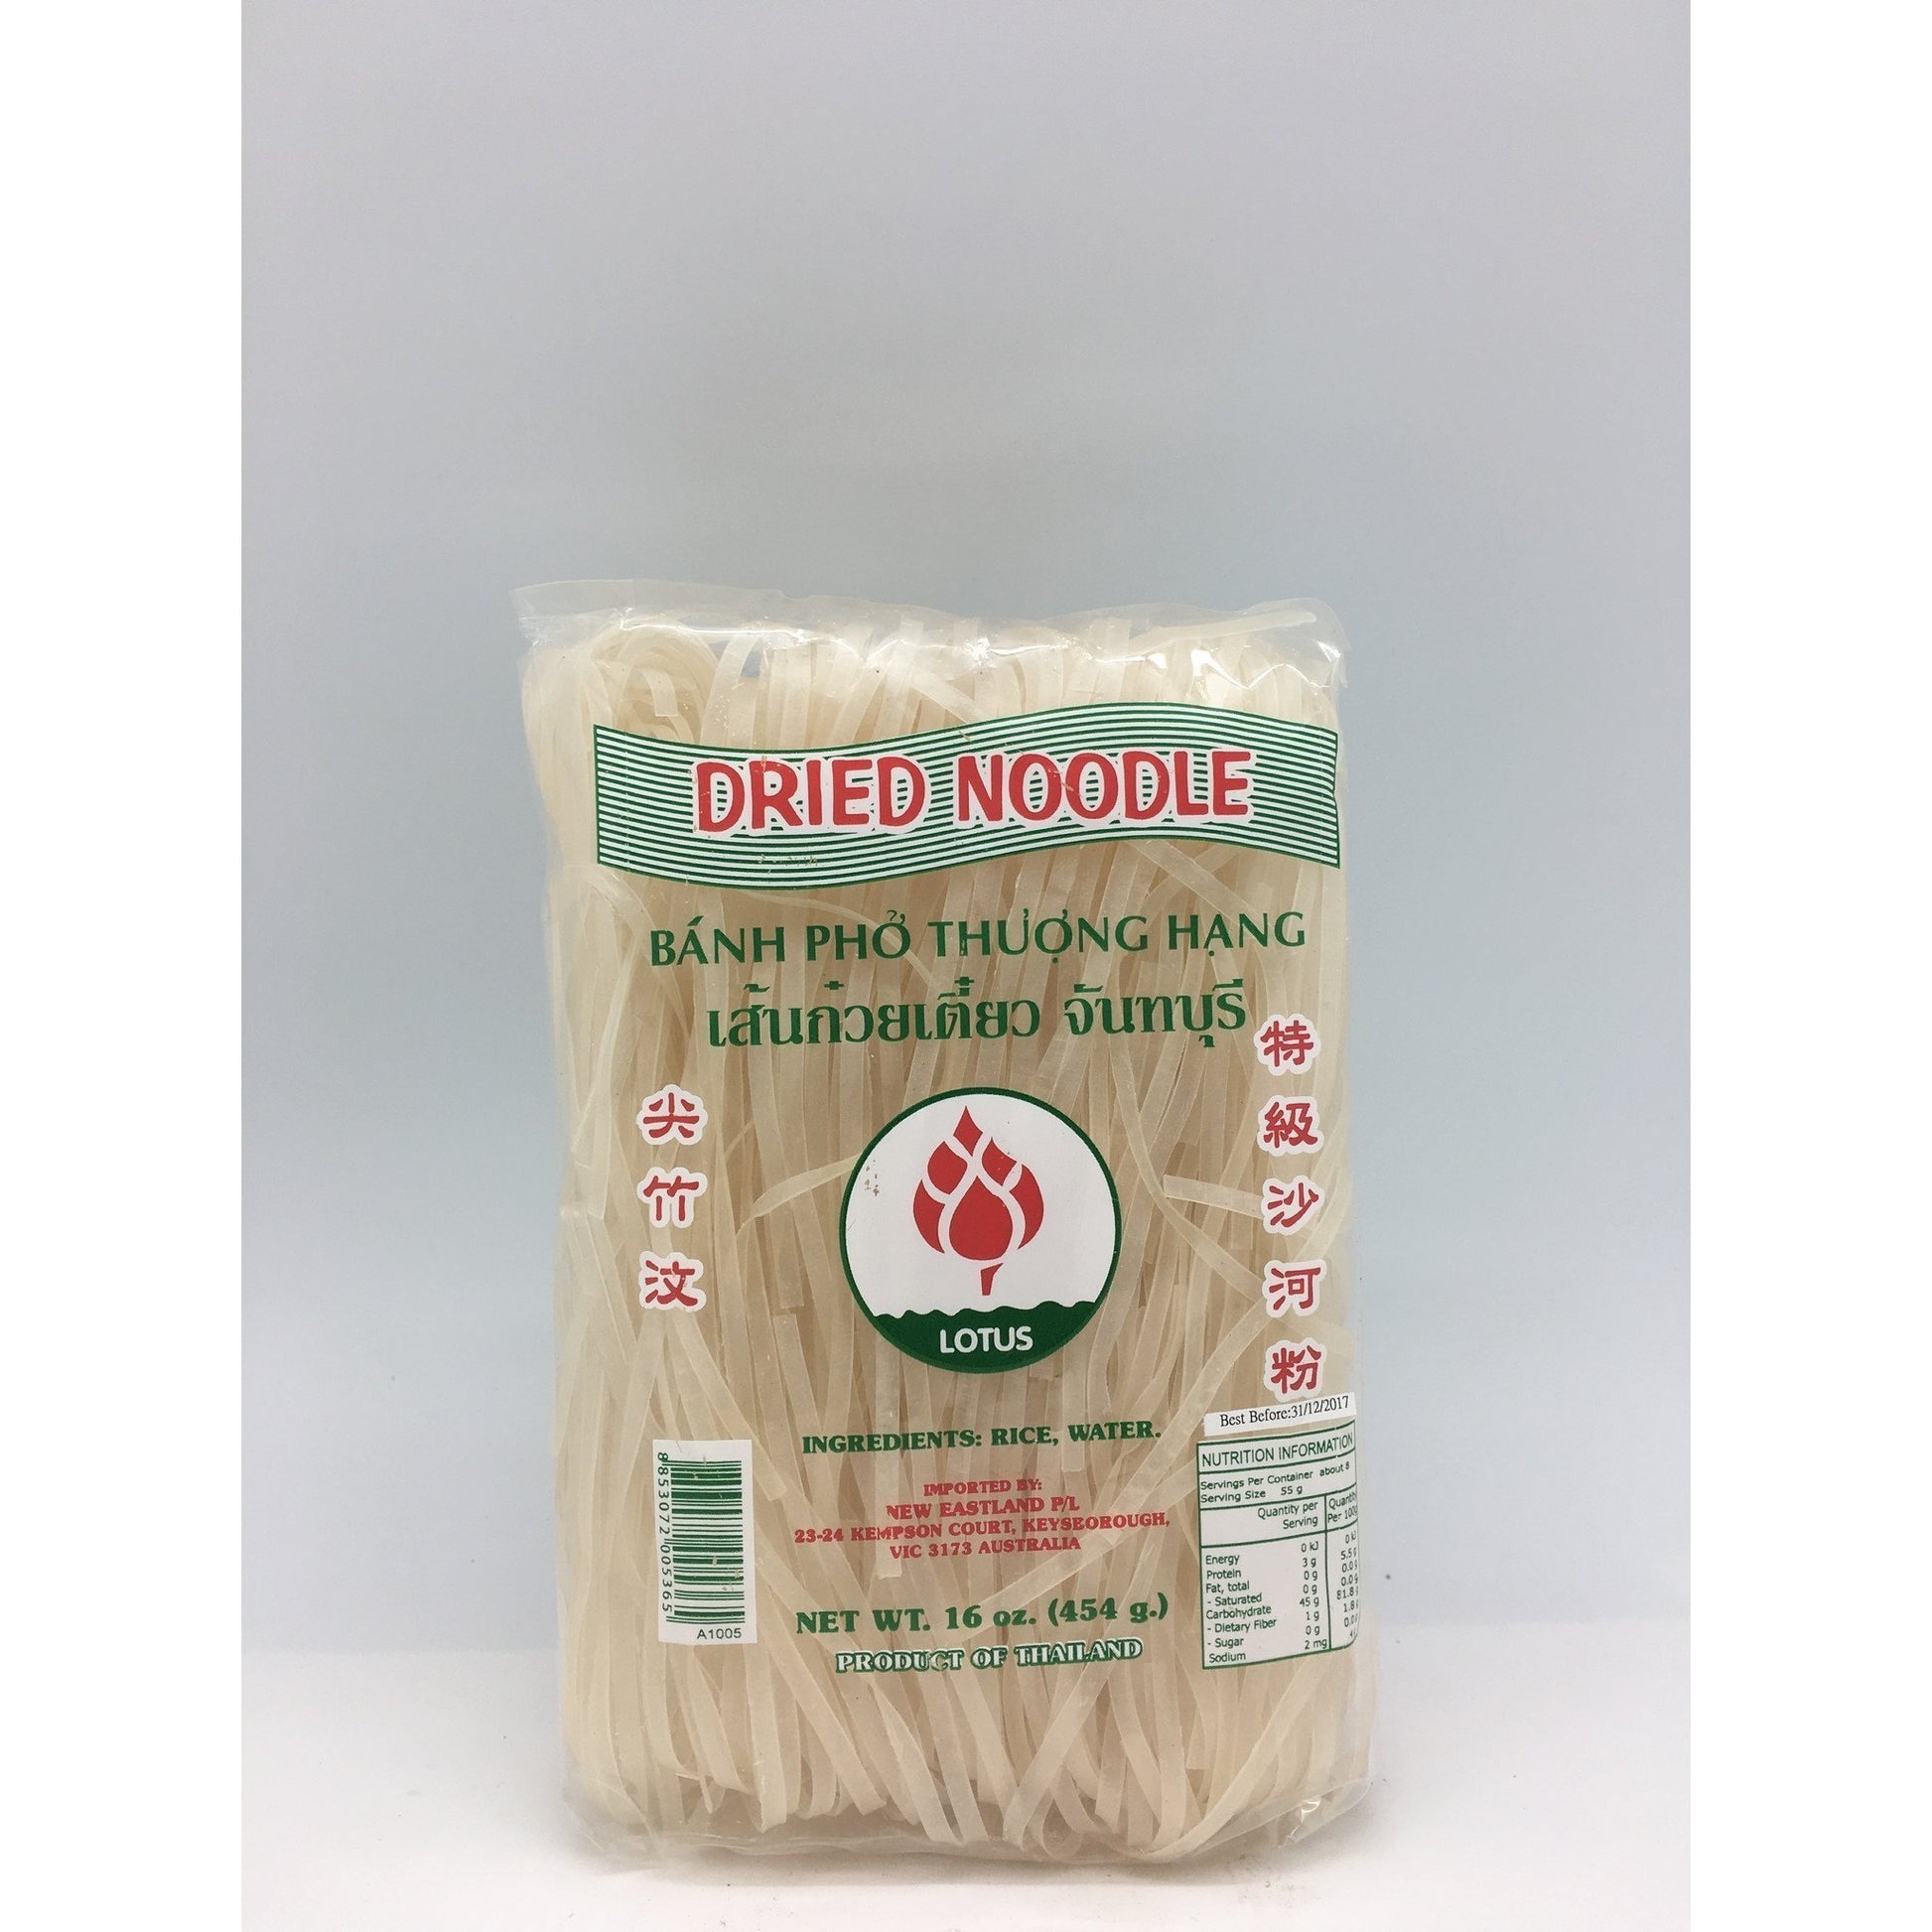 N036M Lotus Brand - 3mm Rice Noodles 454g - 30 bags / 1CTN - New Eastland Pty Ltd - Asian food wholesalers